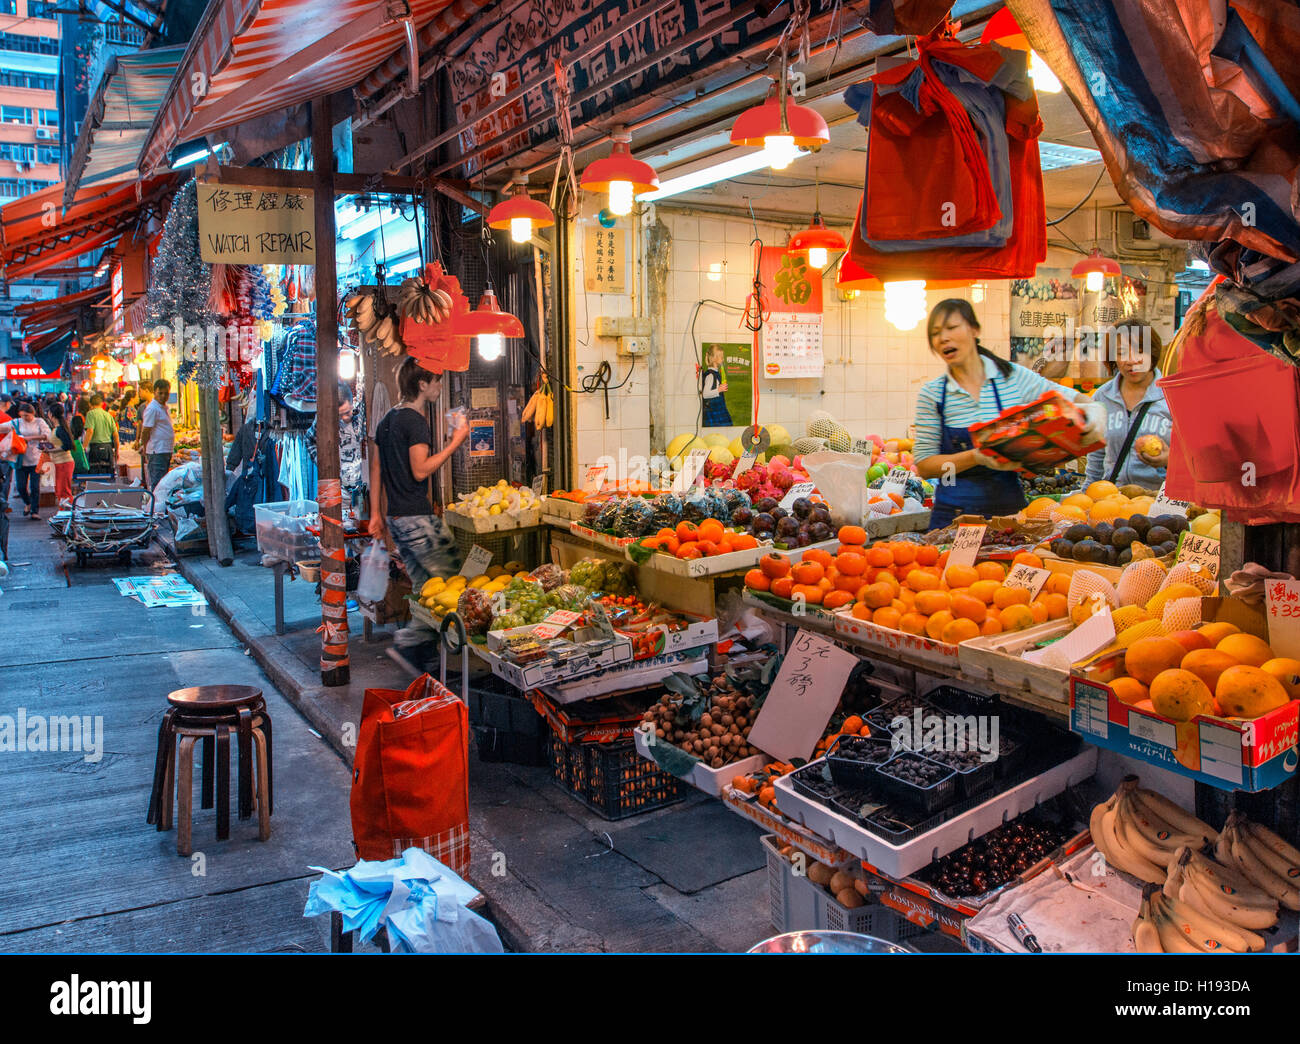 Wan Chai market in Hong Kong Stock Photo